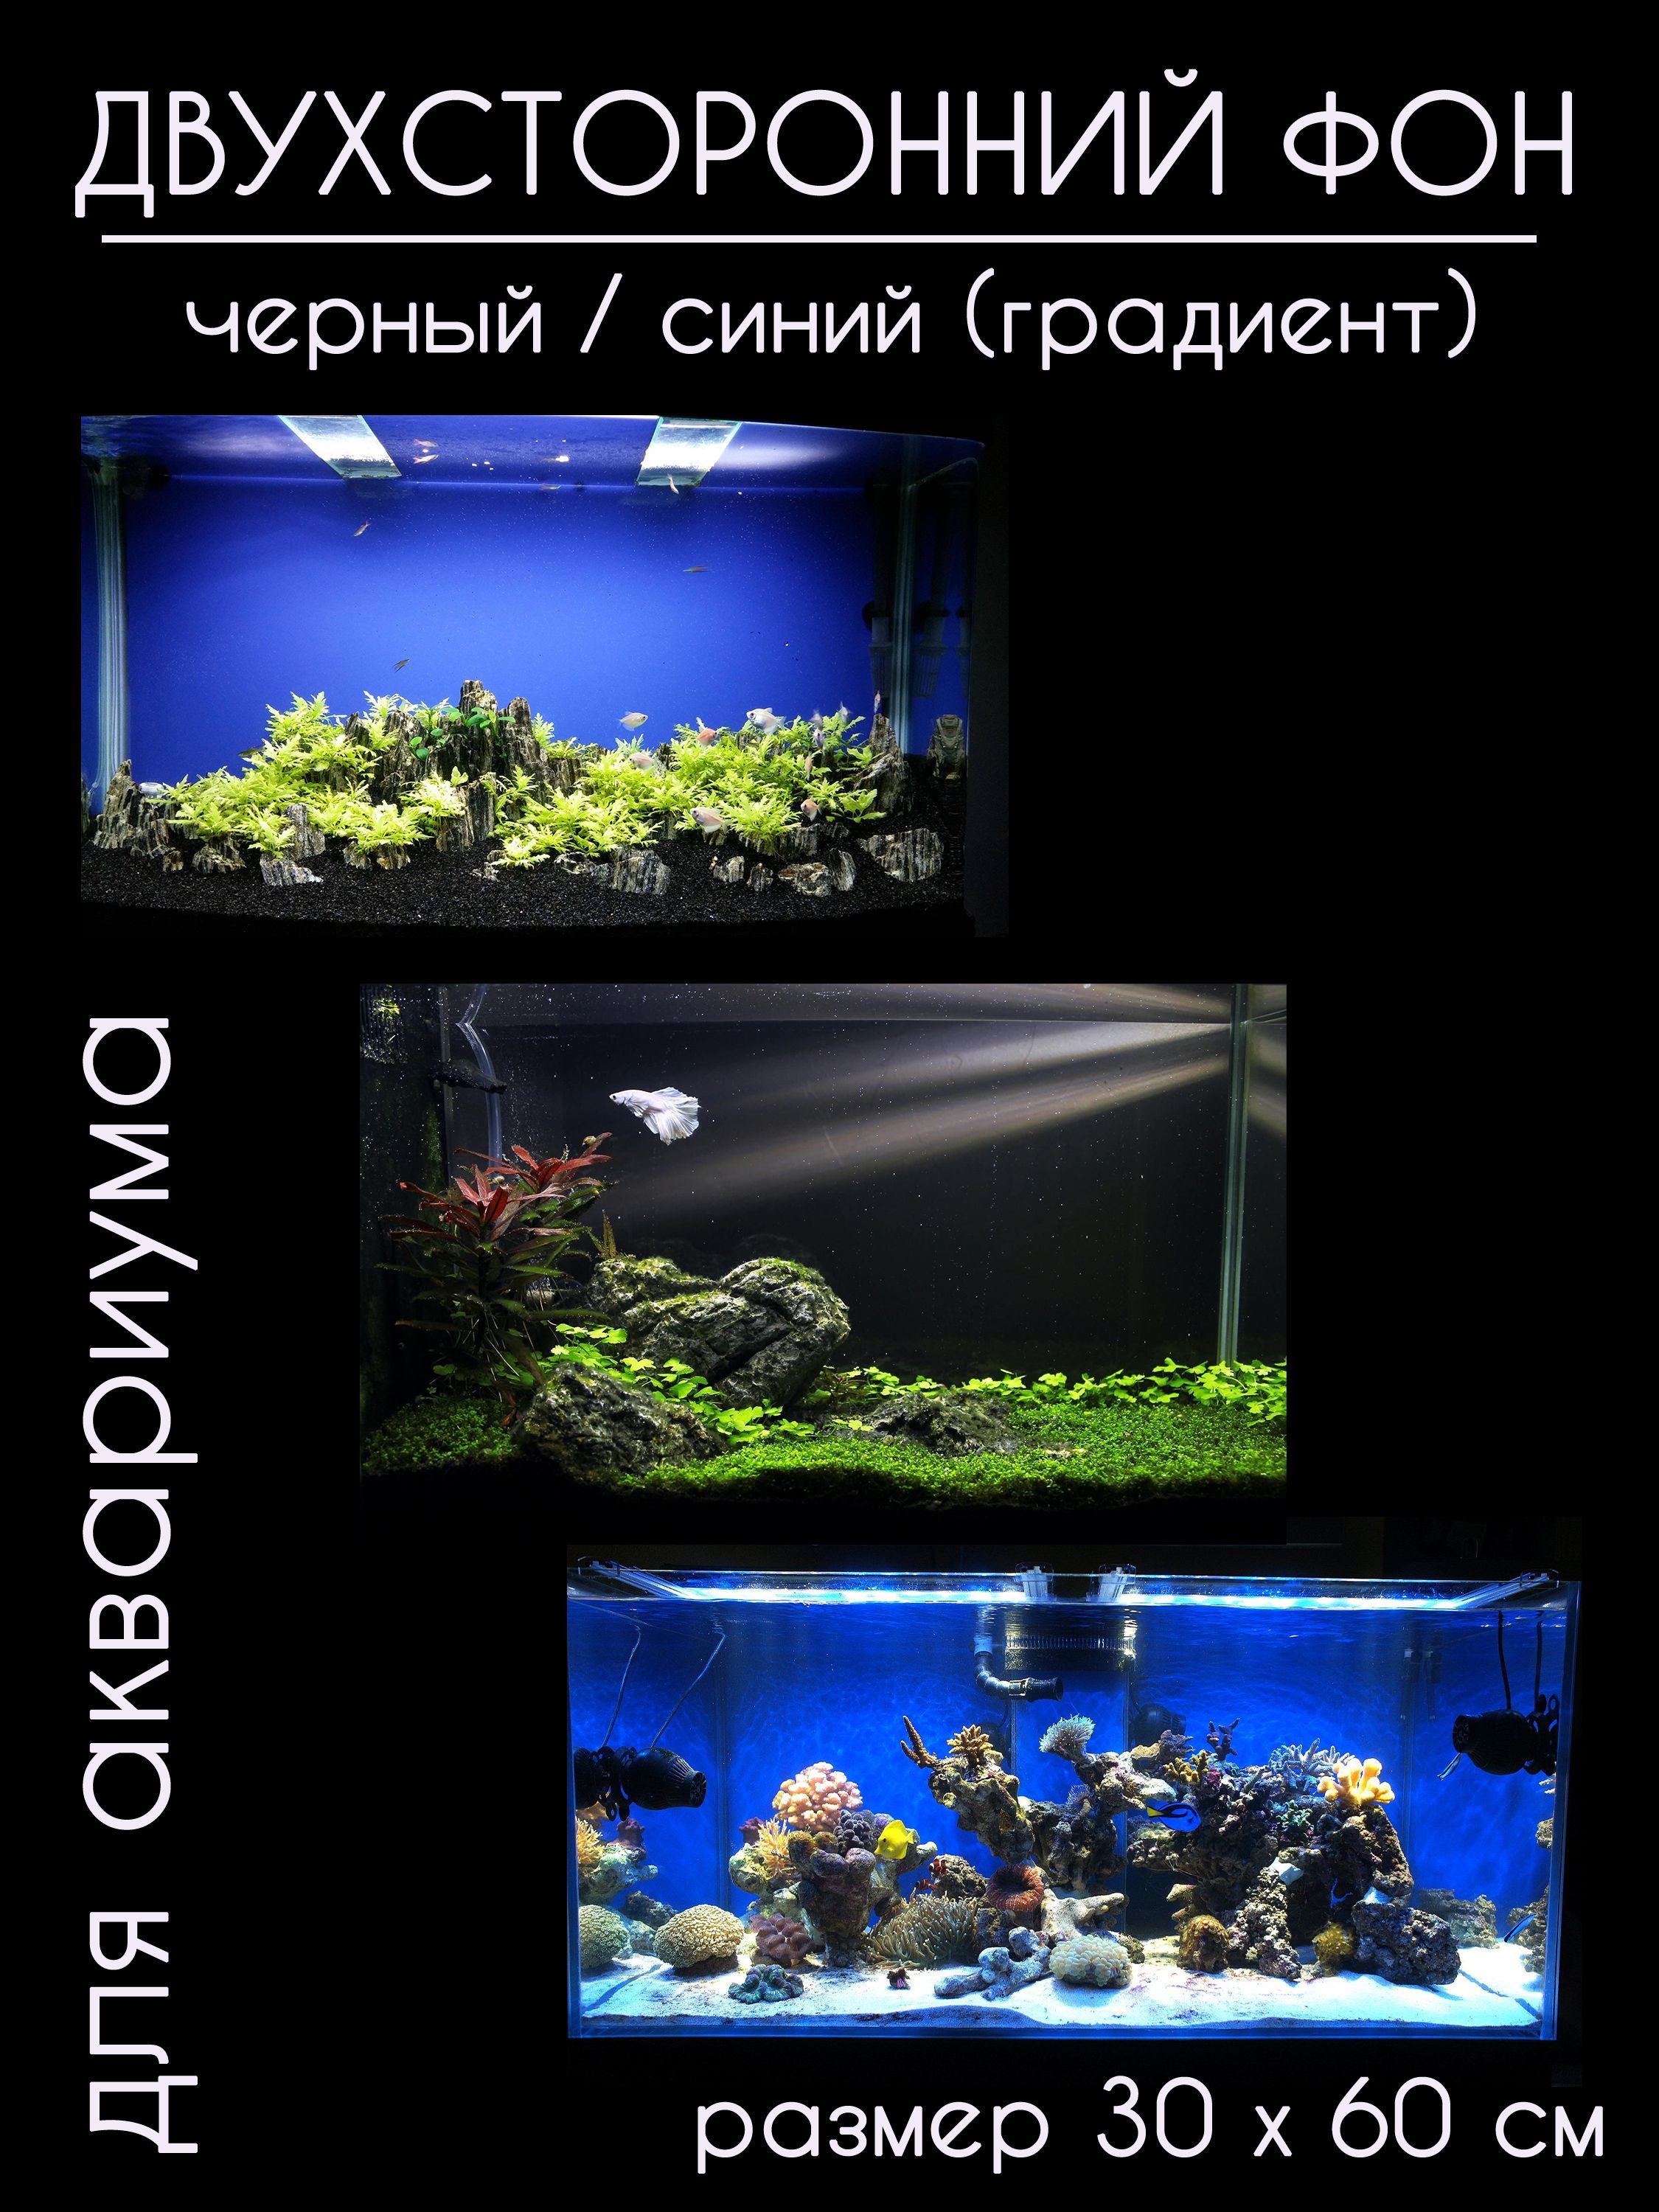 Фоны для аквариума > Фон для аквариума Masha Bloom матовый синий купить в интернет-магазине